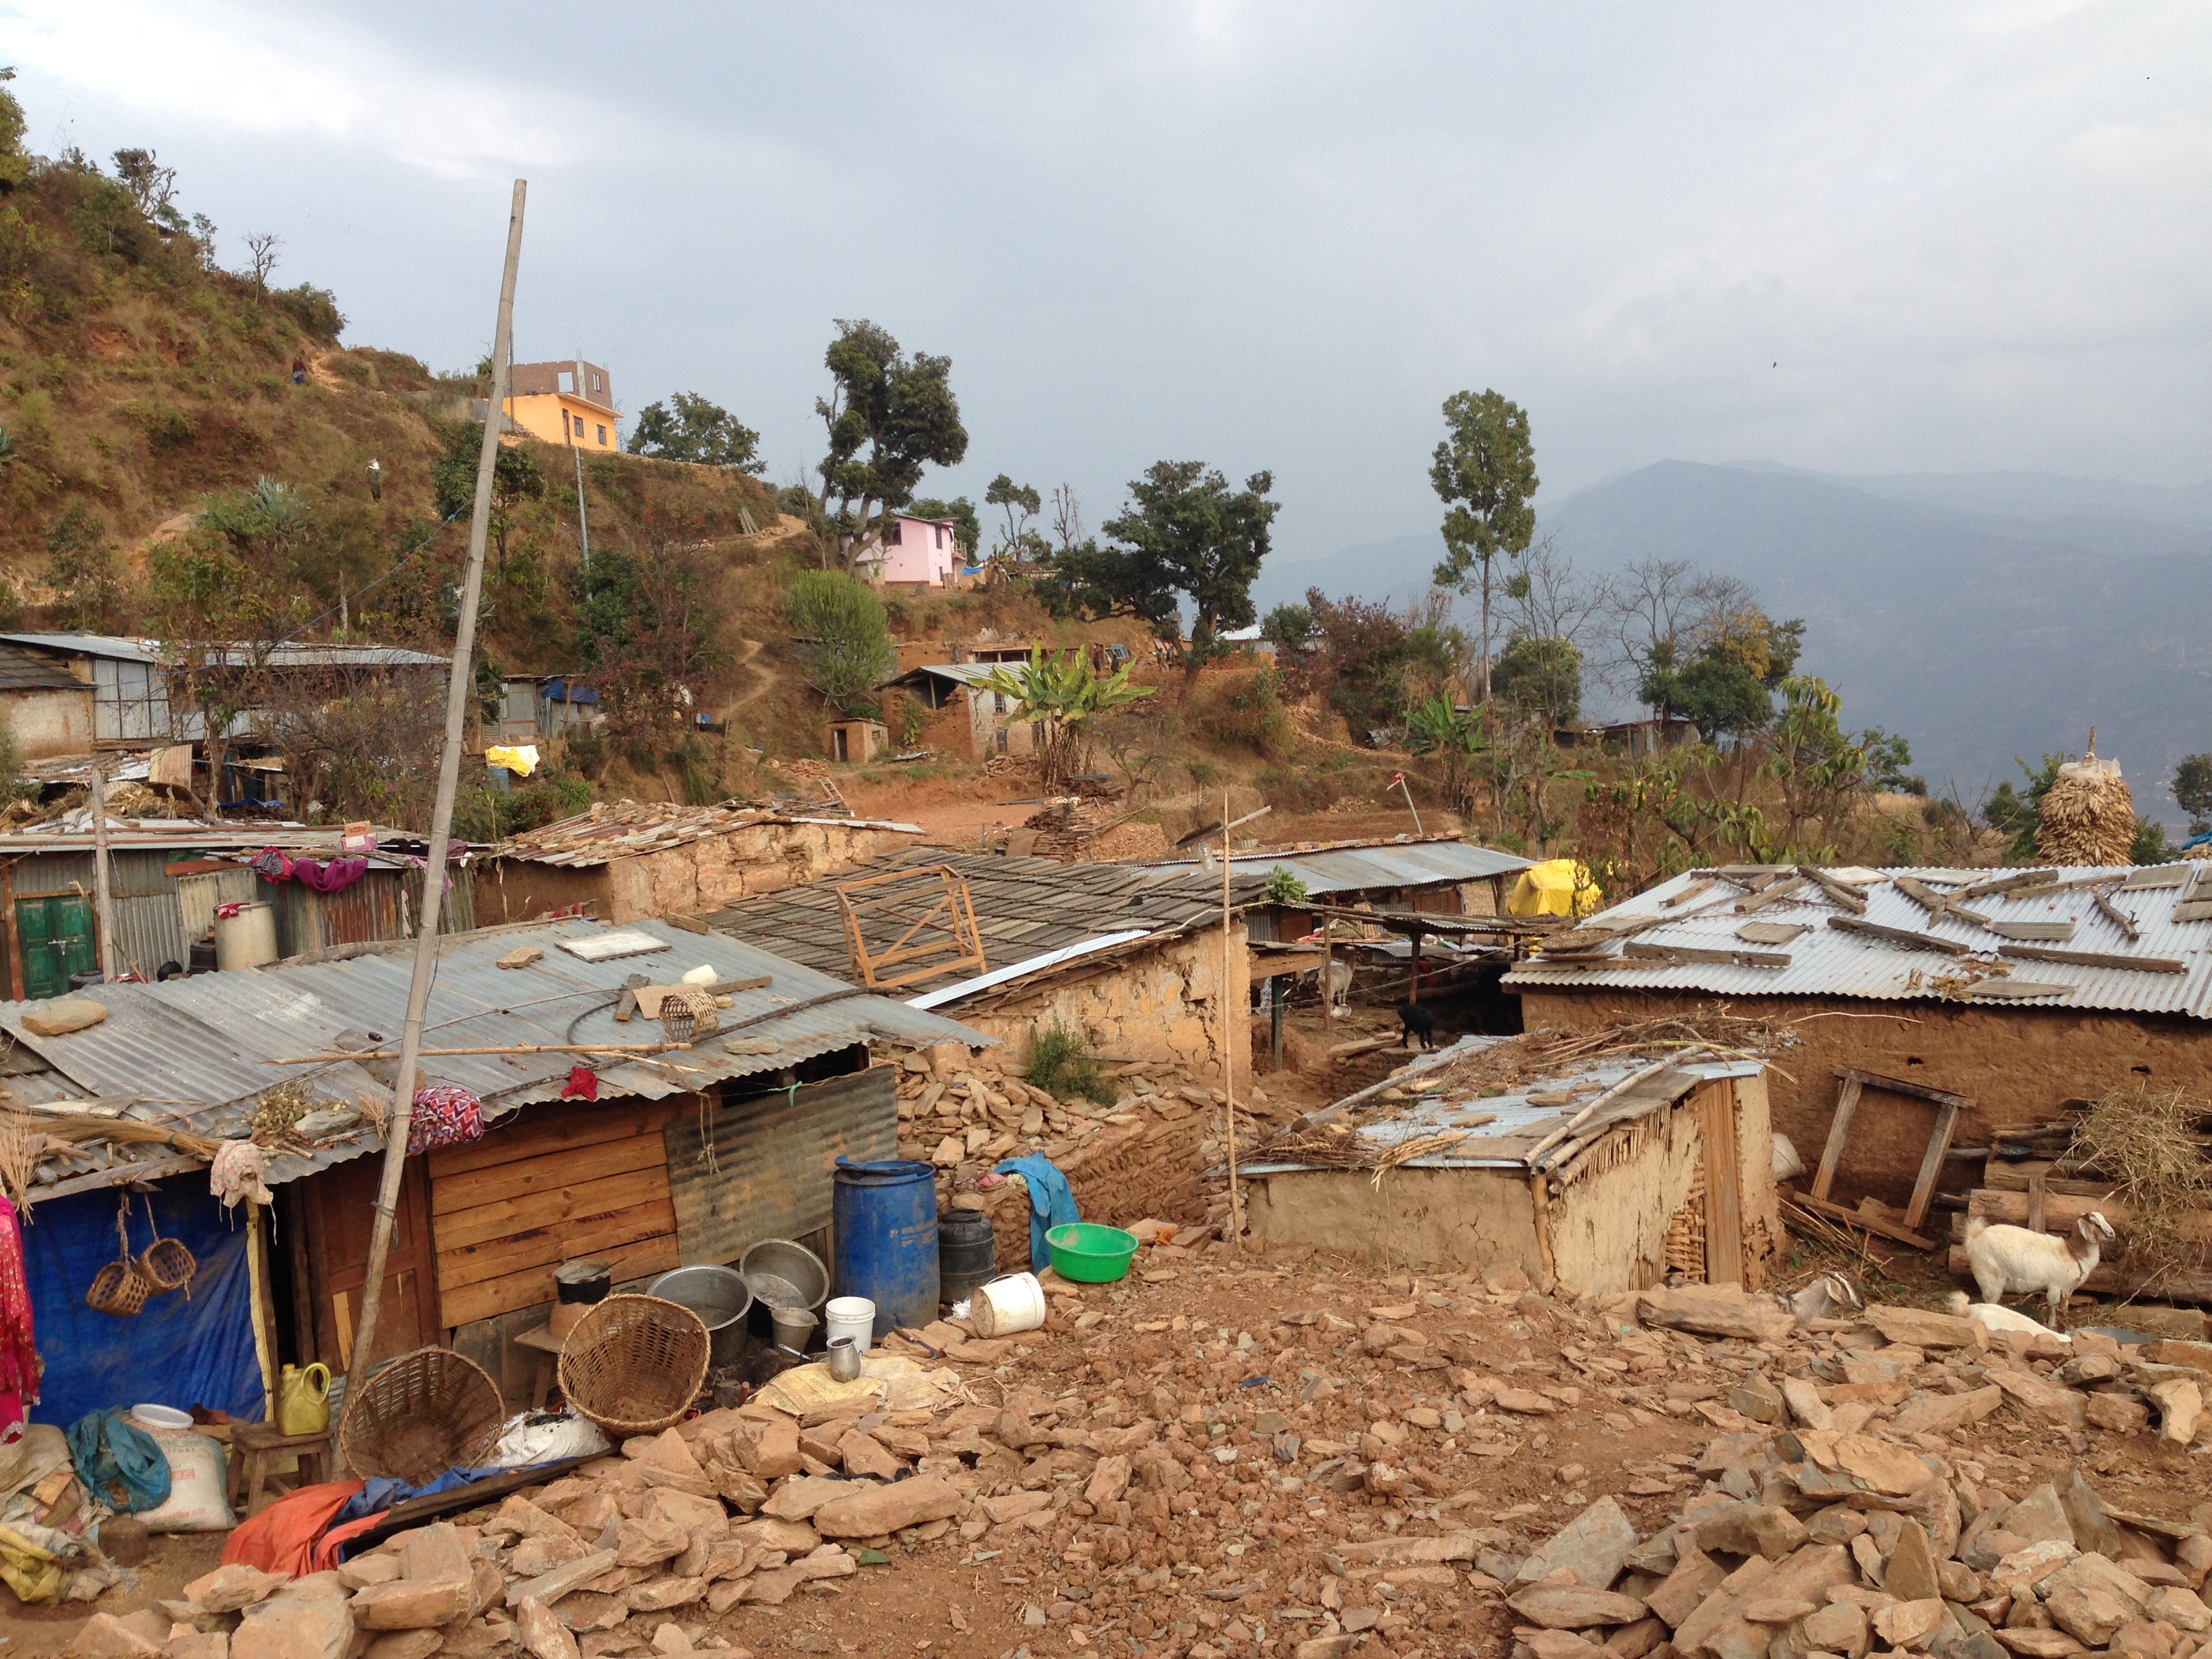 Kylä Sangassa tuhoutui maanjäristyksessä kokonaan. Väliaikaismajoituksissa asuvat kyläläiset ovat epävarmoja, tulevatko saamaan apua kylän uudelleenrakentamiseen. Useat kylän työikäisistä miehistä ovat lähteneet ulkomaille töihin.